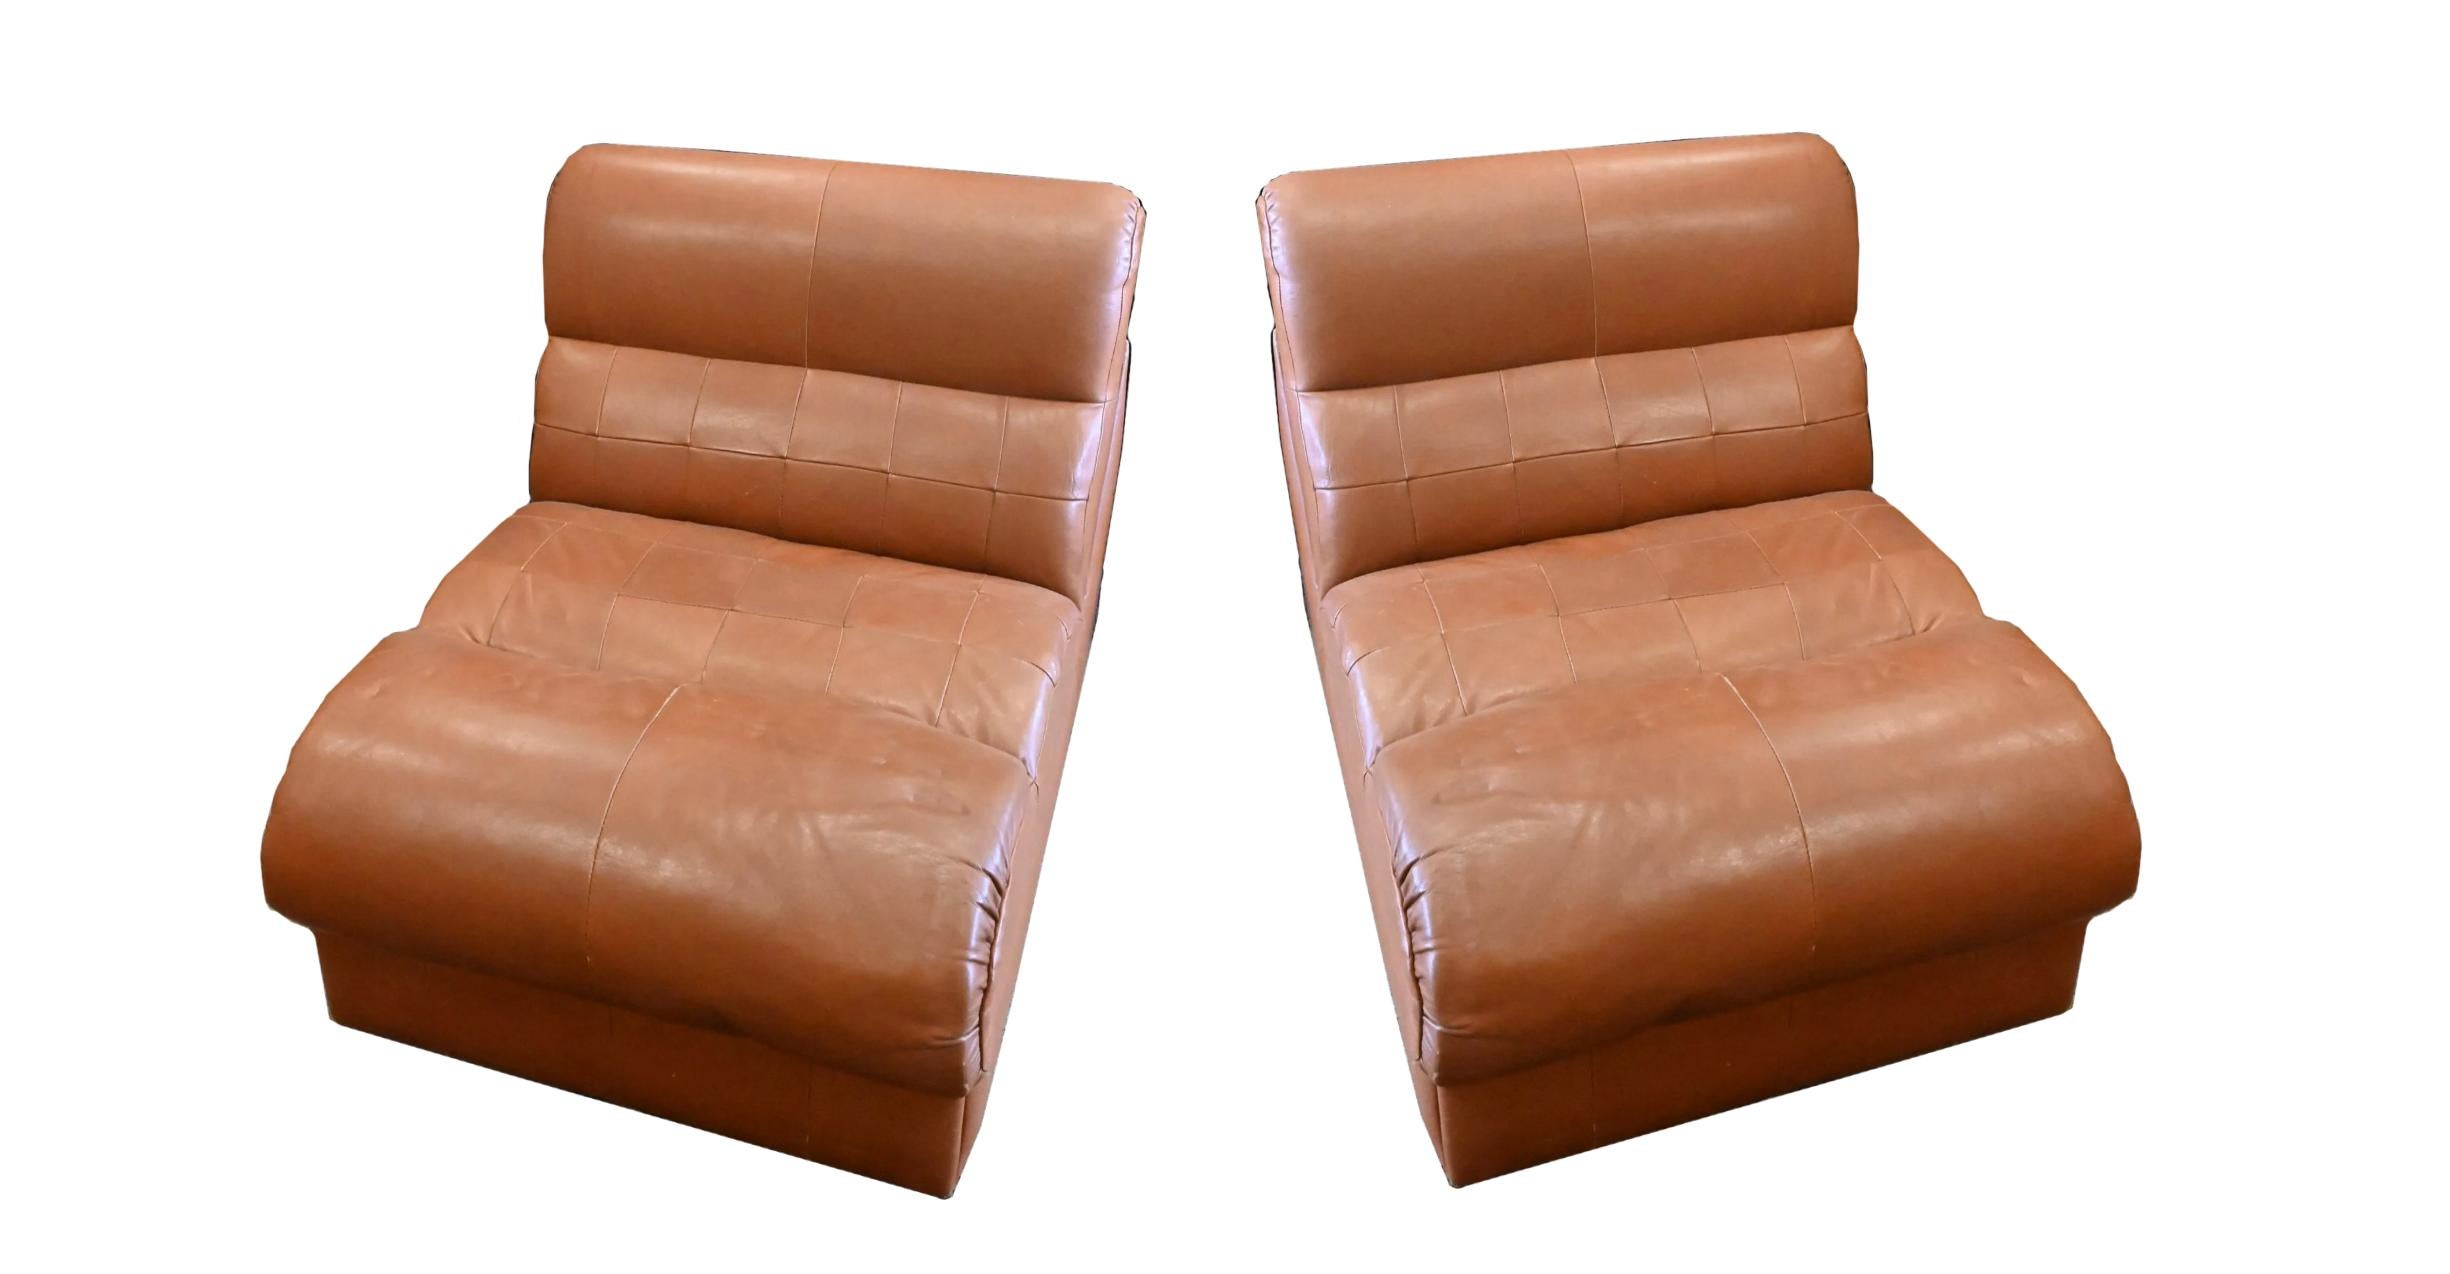 Paar Percival Lafer Mitte des Jahrhunderts Low Leder Patchwork Slipper Lounge Chairs. Dickes, weiches, hellbraunes Patchwork-Leder - modularer Aufbau, diese (2) Einheiten können getrennt oder zusammengeschoben verwendet werden. Sie eignen sich